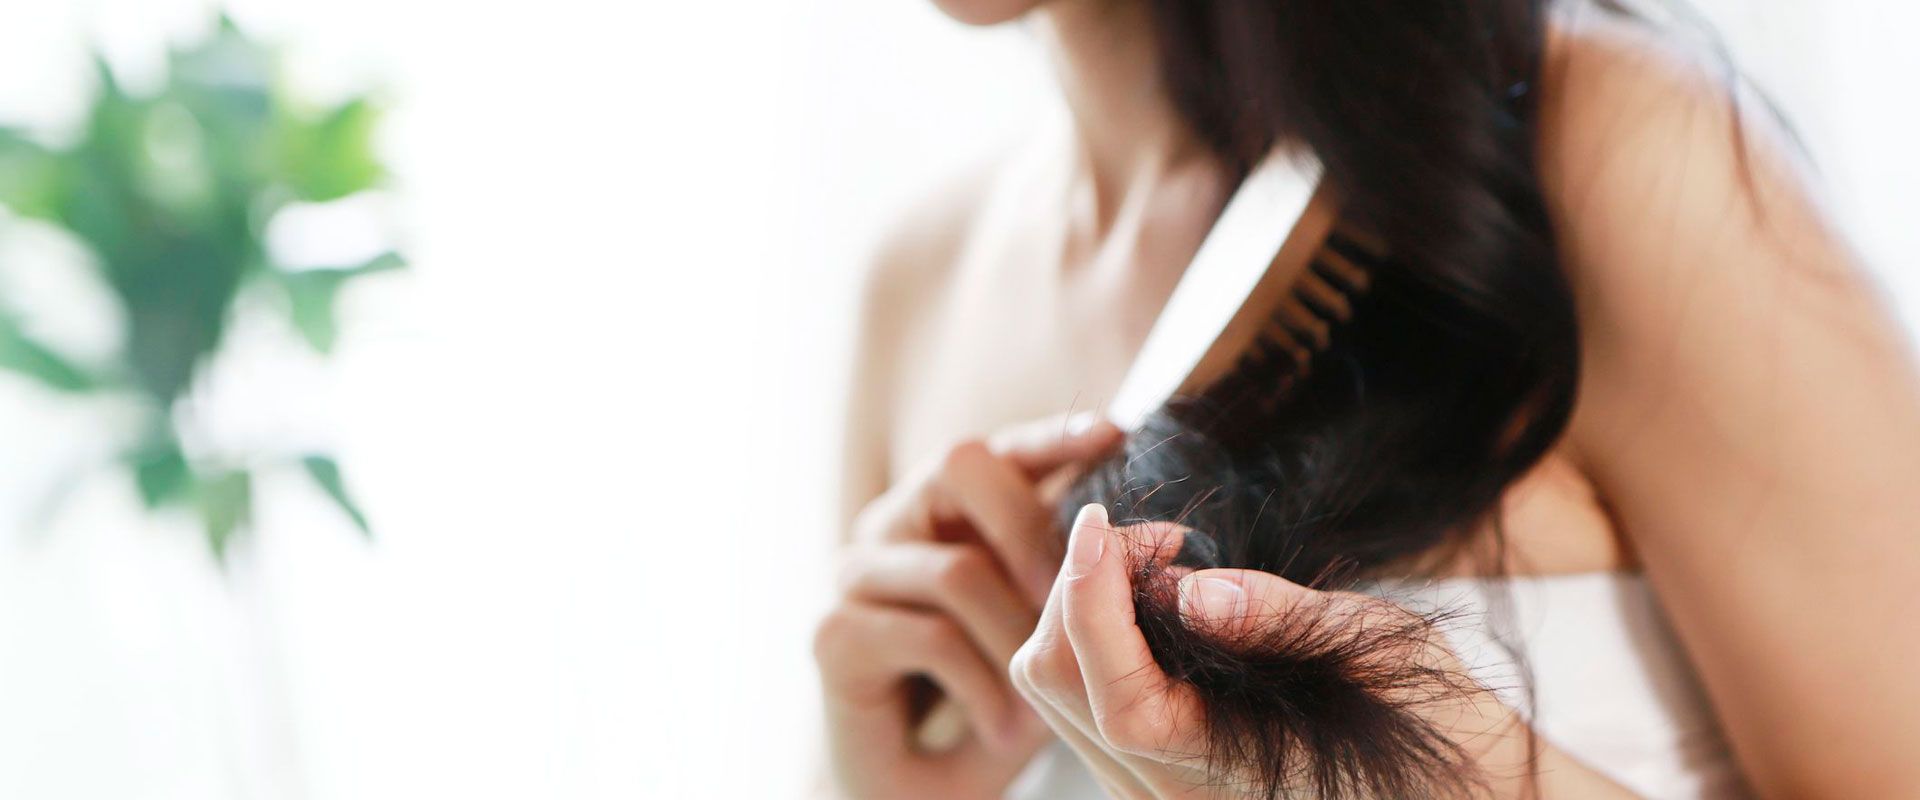 Випадання волосся: Розуміння, Профілактика та Поради для Здоров'я Волосся